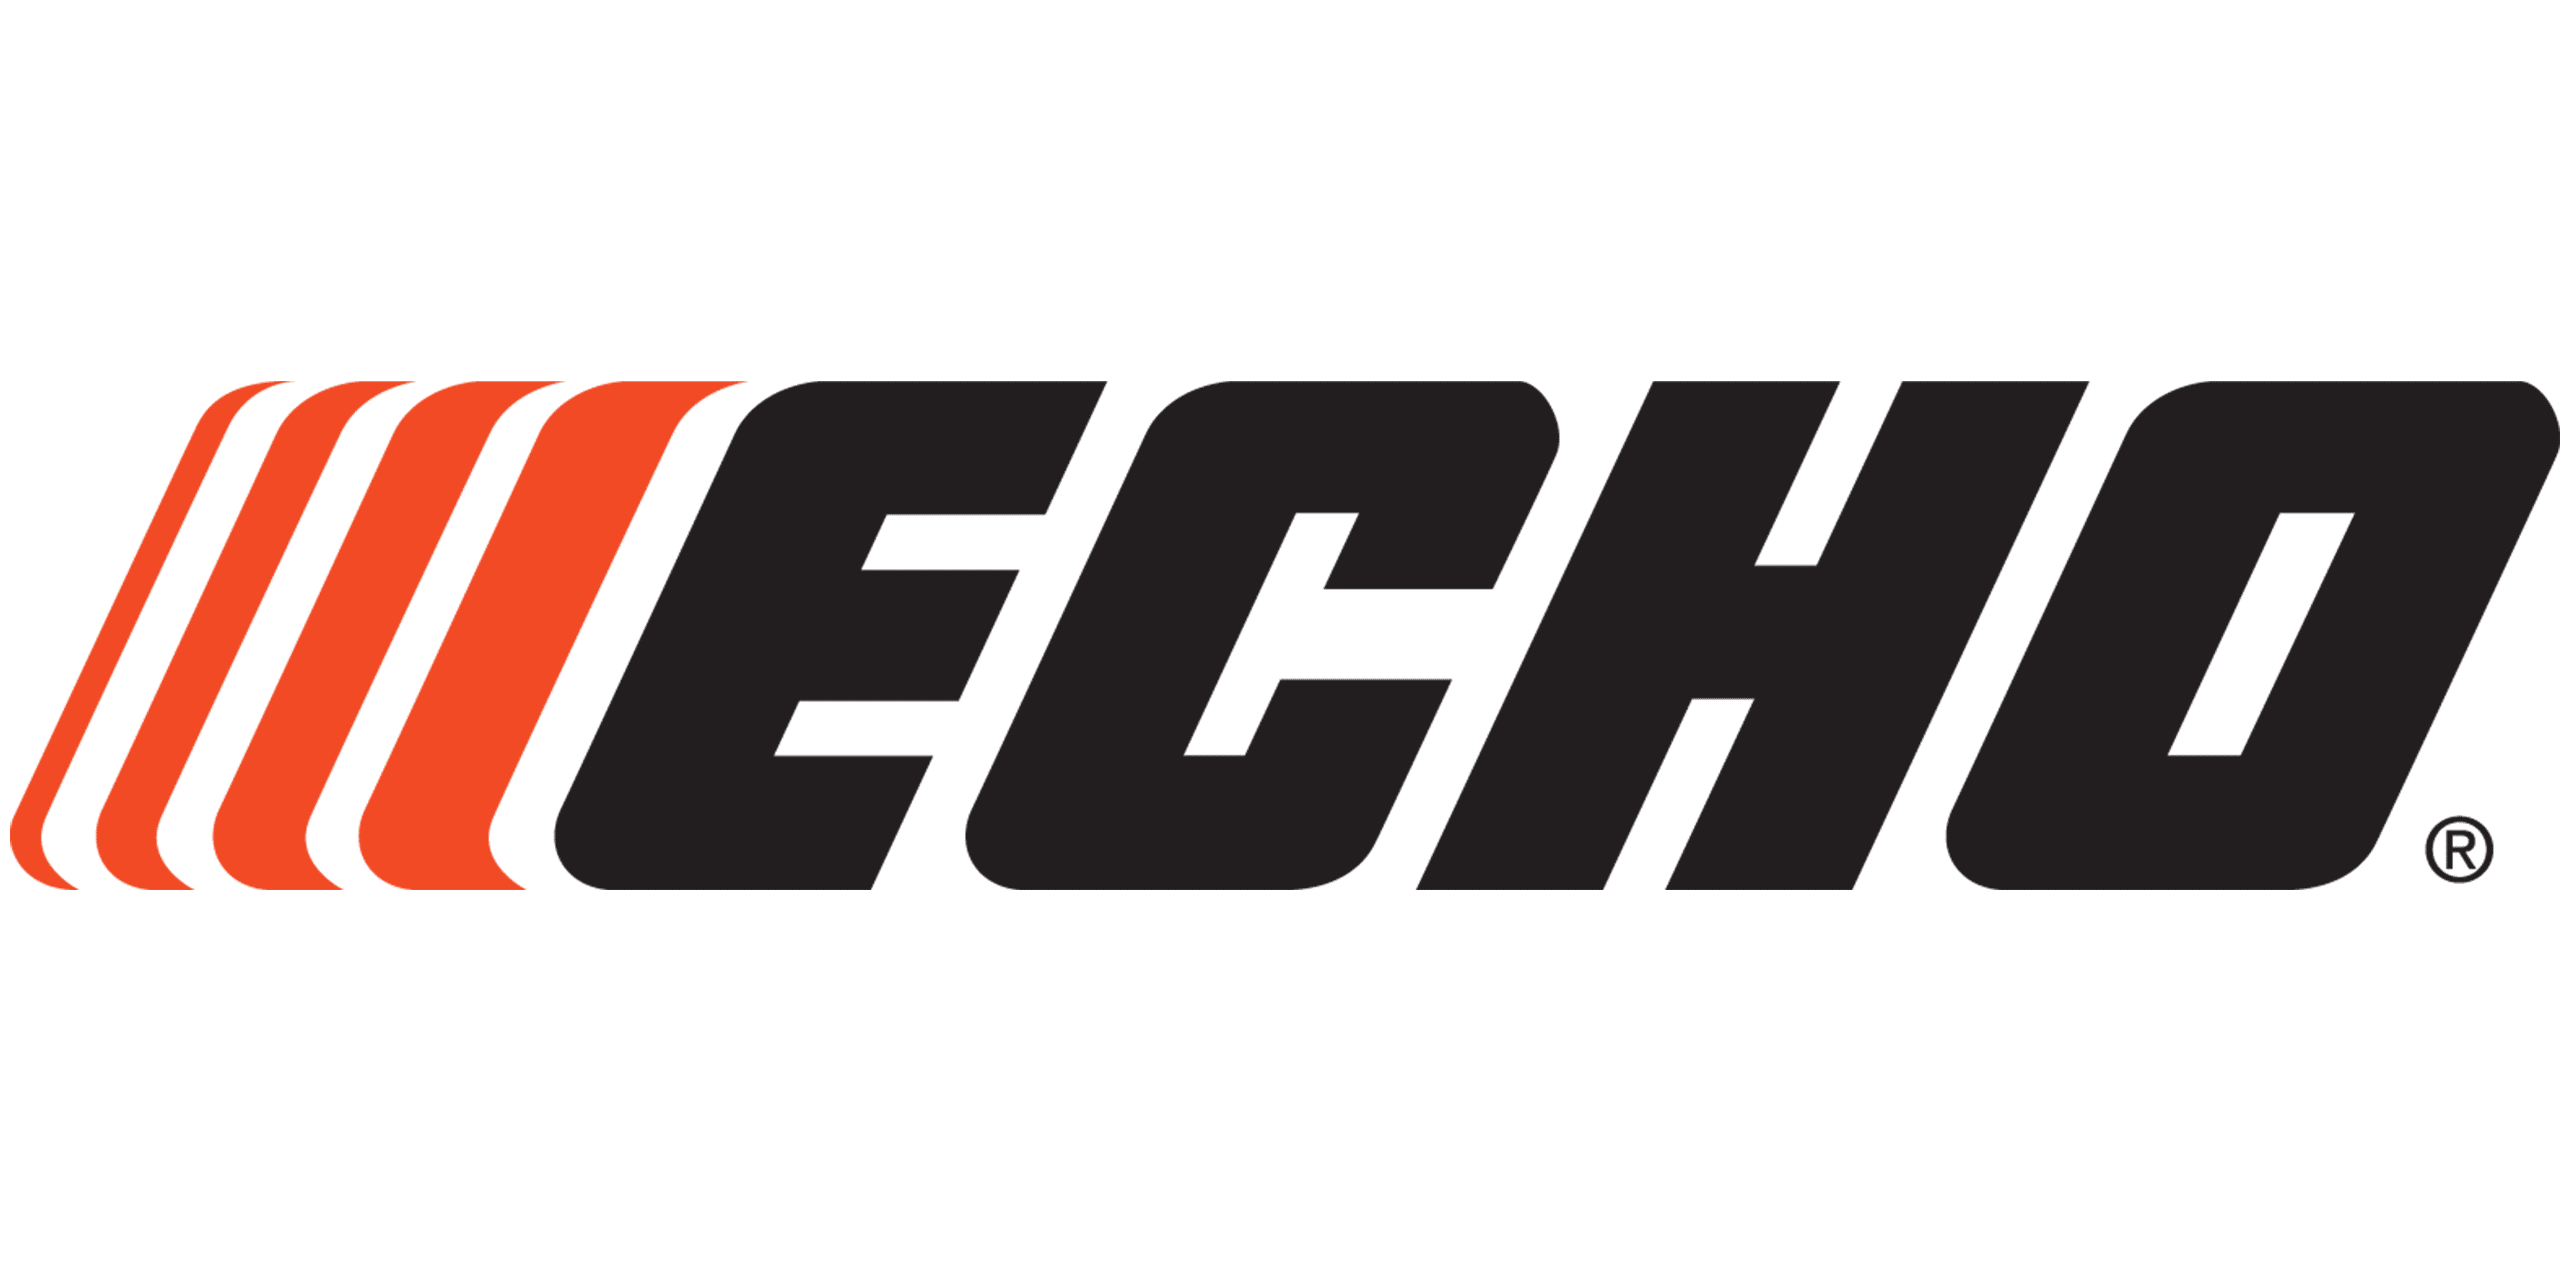 Echo Parts and Sales in NJ